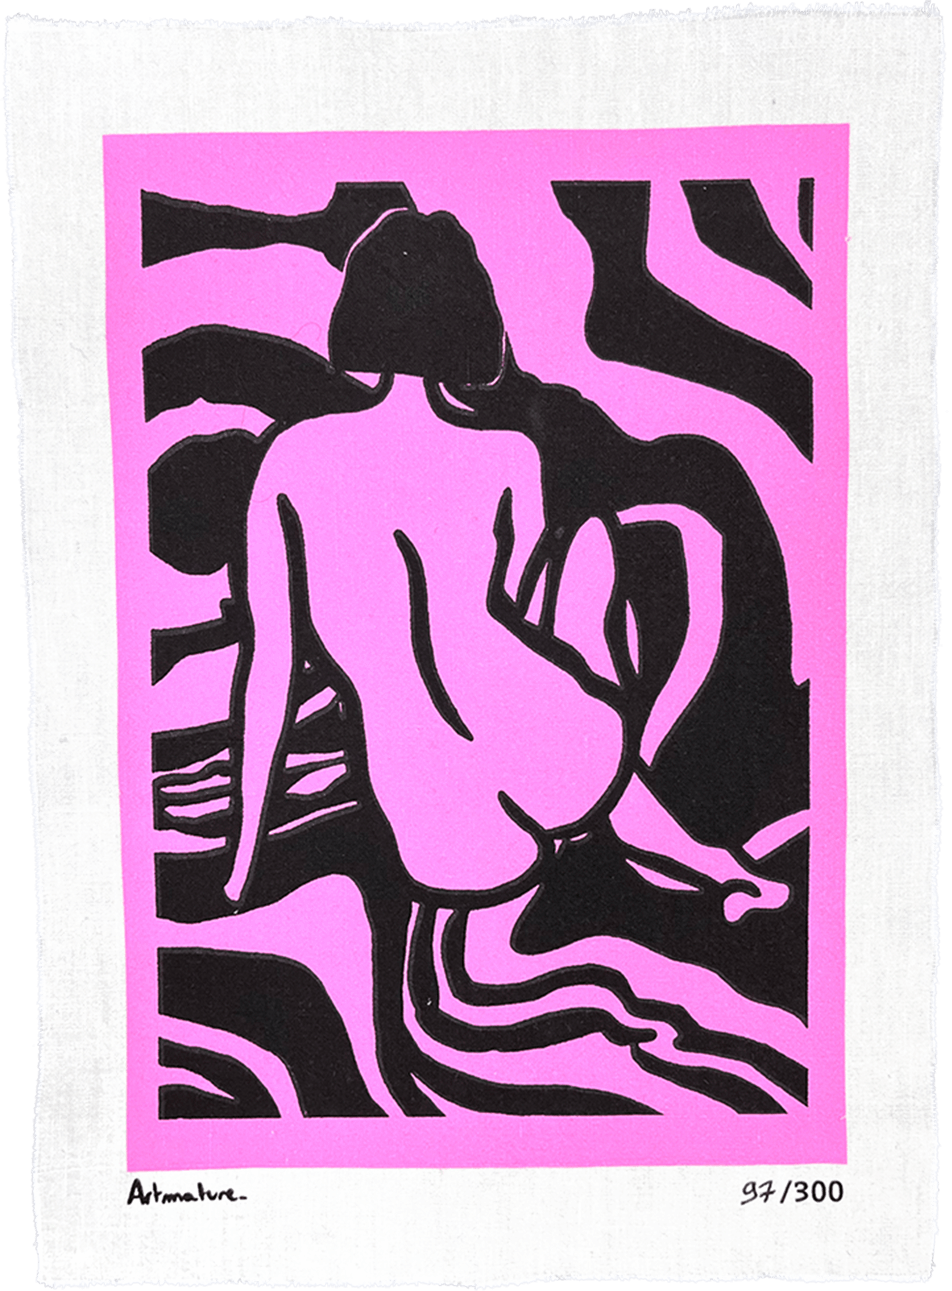 Oeuvre de Artmature, une artiste strasbourgeoise pour sa collaboration avec Bisart. Elle montre une femme nue de dos sur un fond rose.